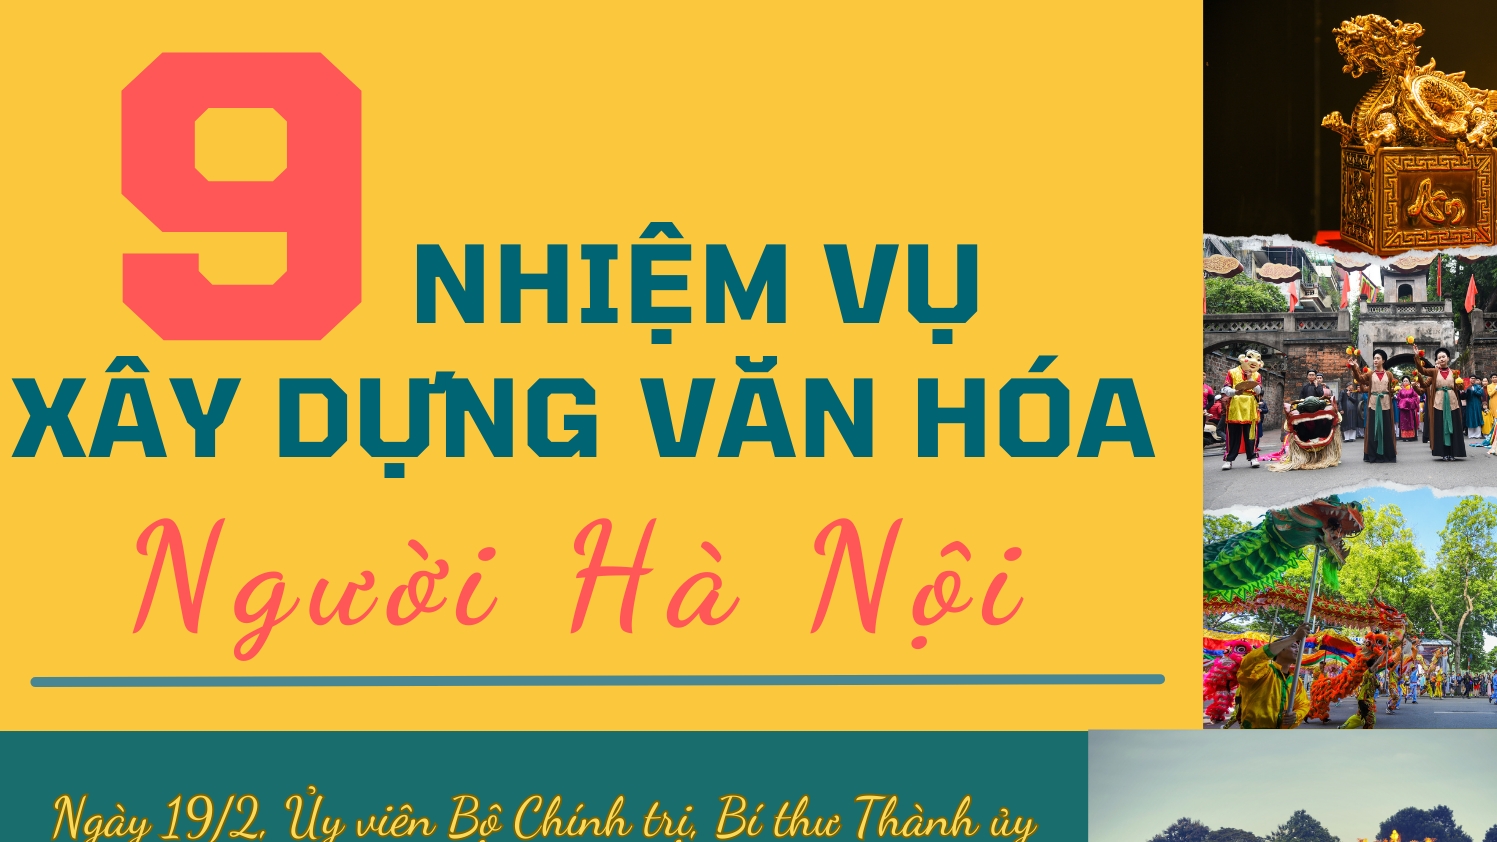 9 nhiệm vụ xây dựng văn hóa người Hà Nội